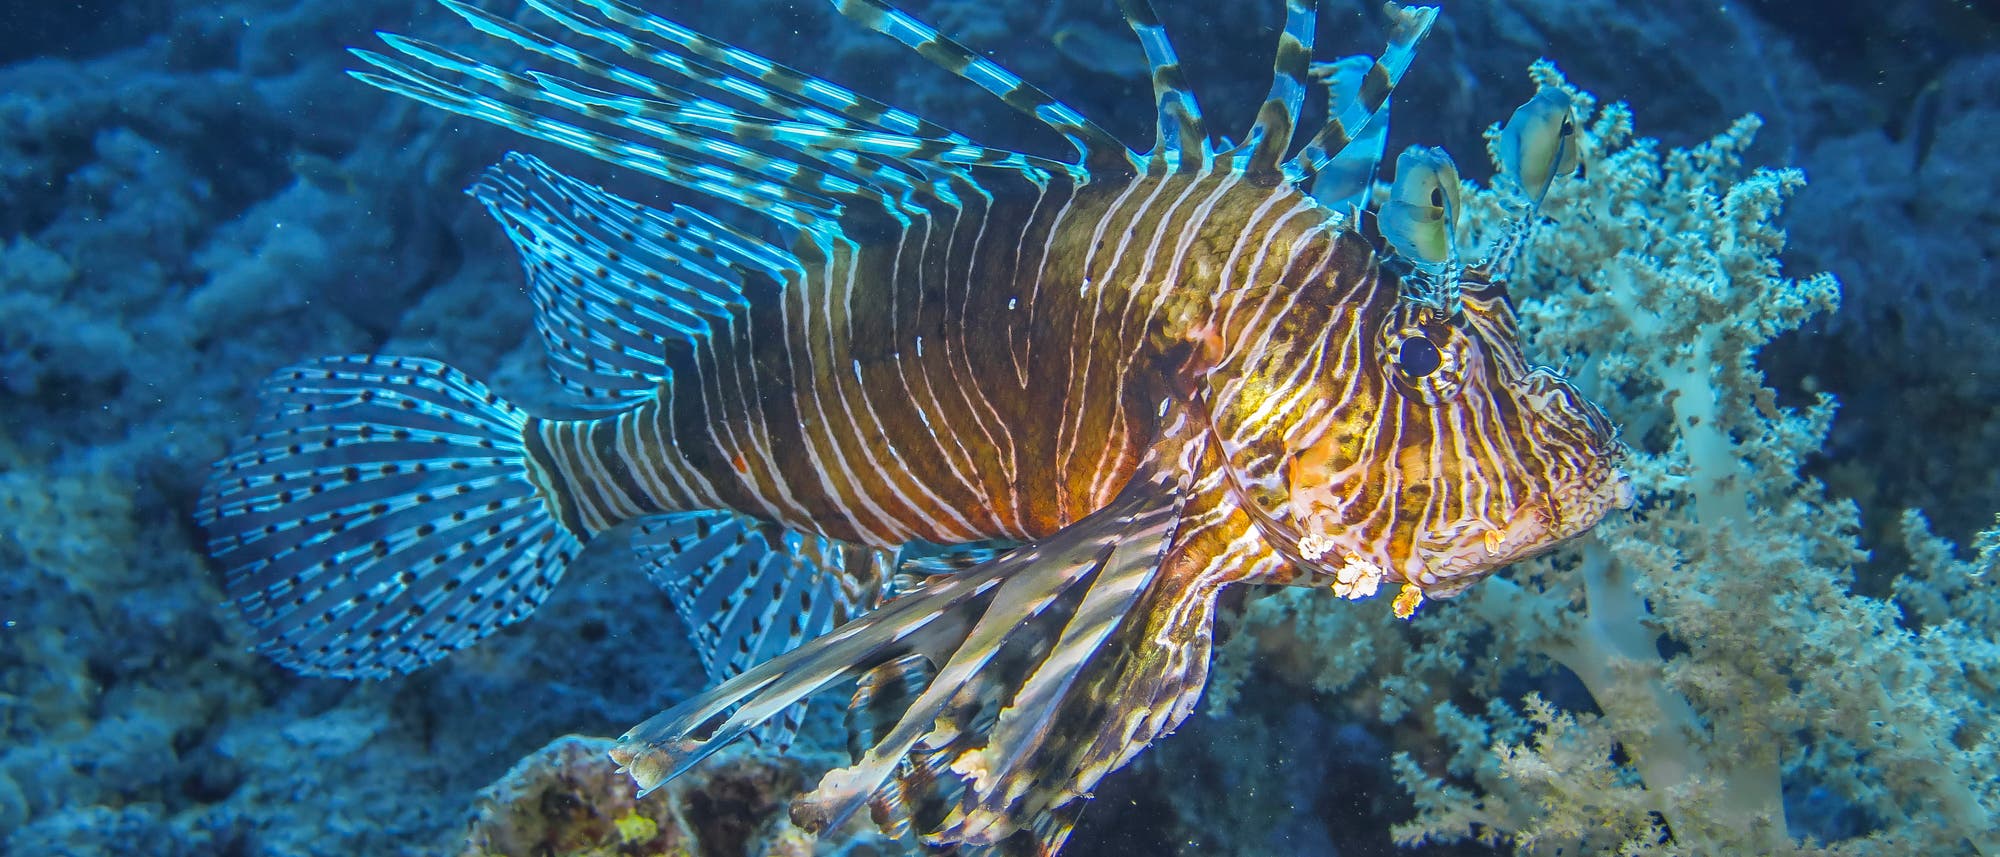 Ein rötlichbraun-weiß gestreifter Feuerfisch mit aufgerichteter, stark gefächerter Rückenflosse und dunklen Augen schwimmt durch das Licht einer Taucherlampe. Rechts unterhalb wächst eine Seeanemone, der Hintergrund ist düster bläulich.